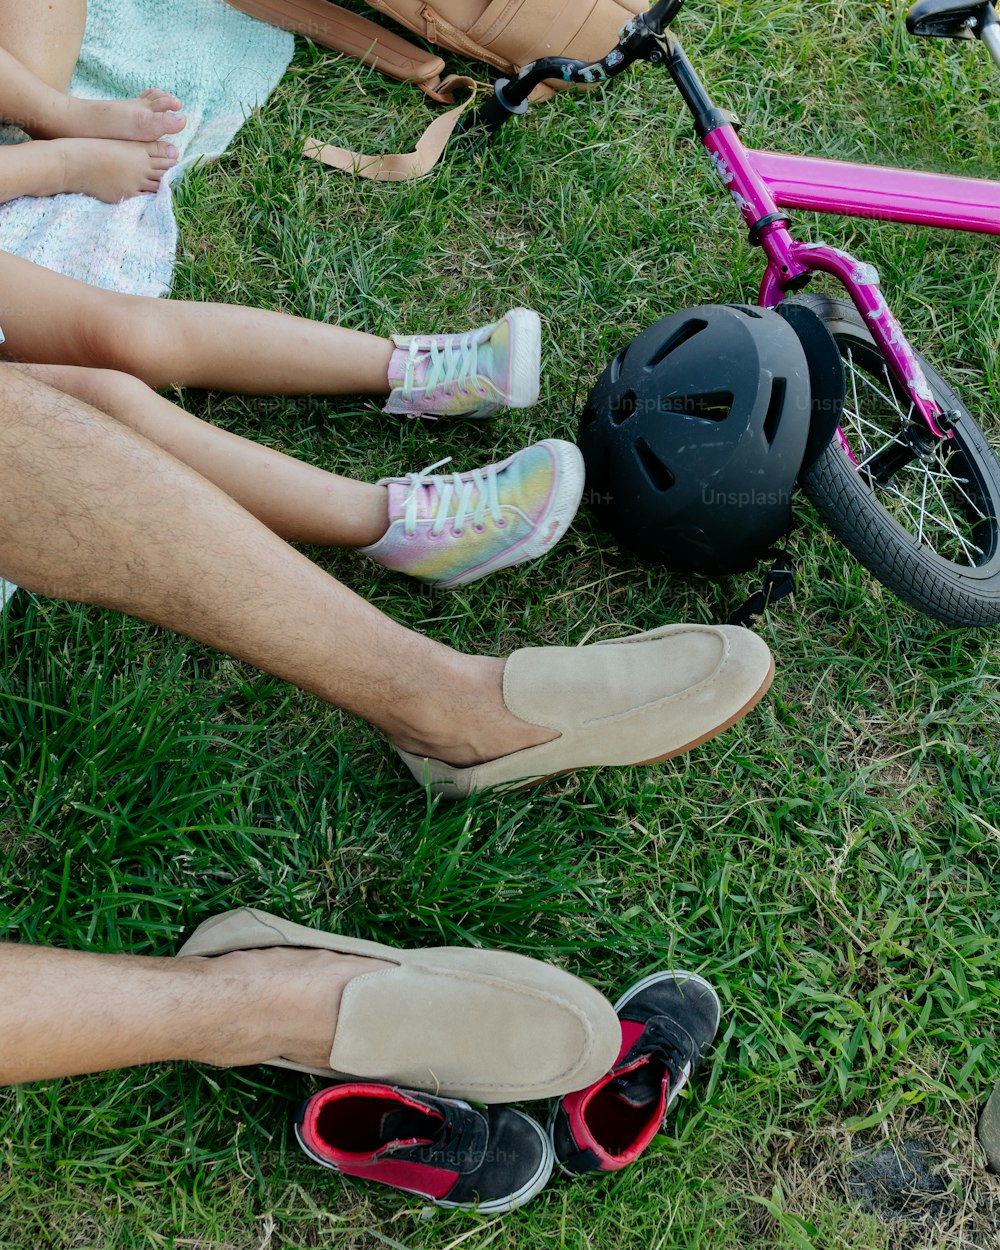 Un uomo e una bambina seduti sull'erba accanto a una bici rosa